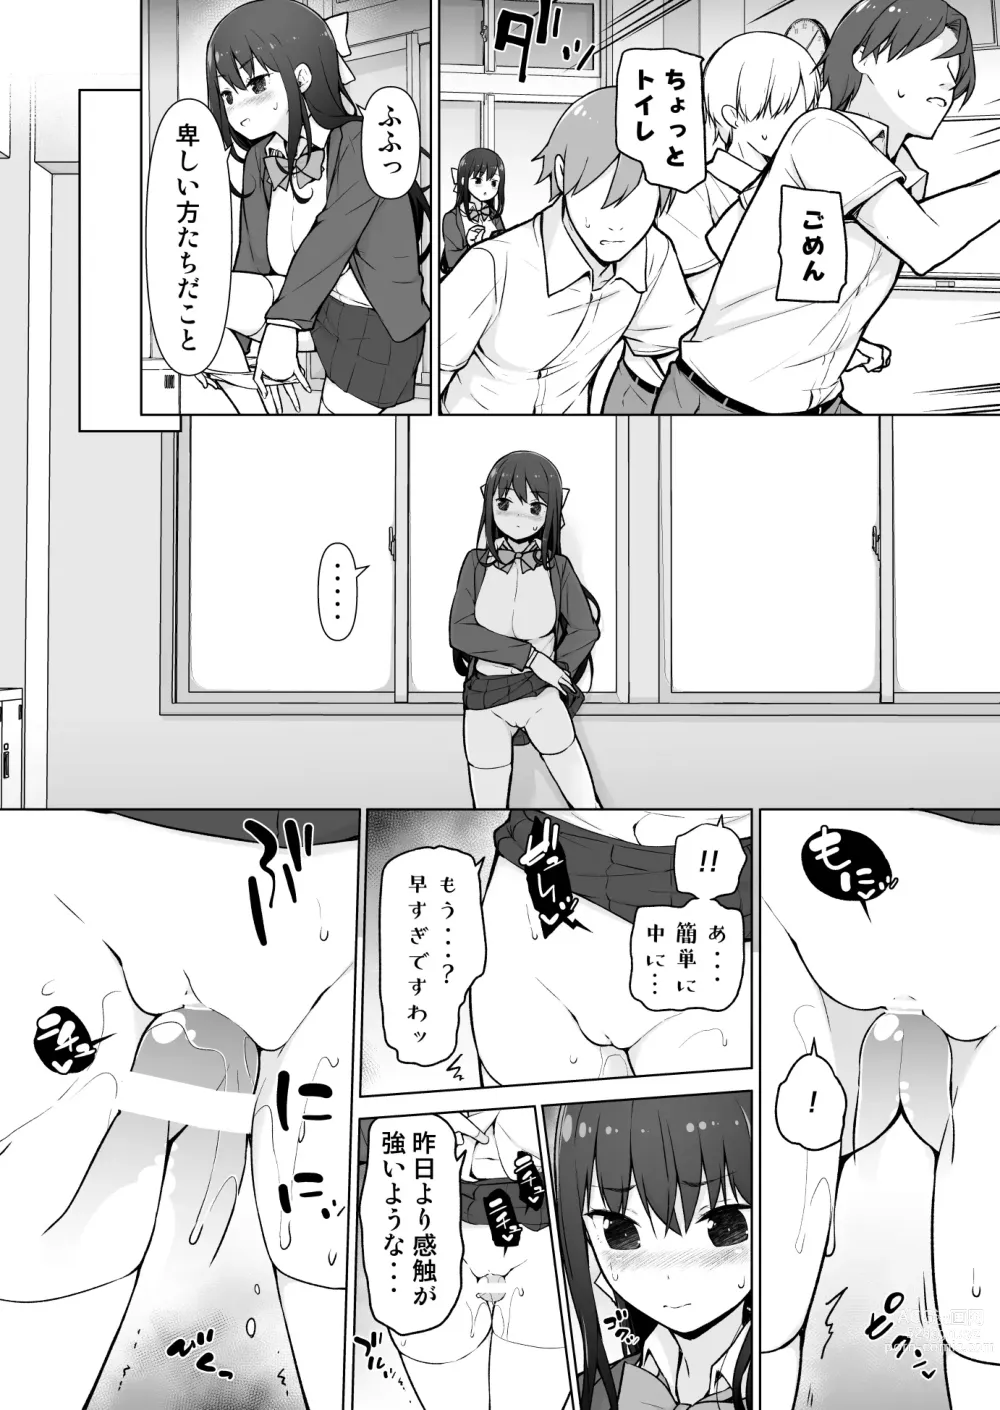 Page 13 of doujinshi Seieki Tensou ~Hanareta Tokoro kara Dashimakuri?!~